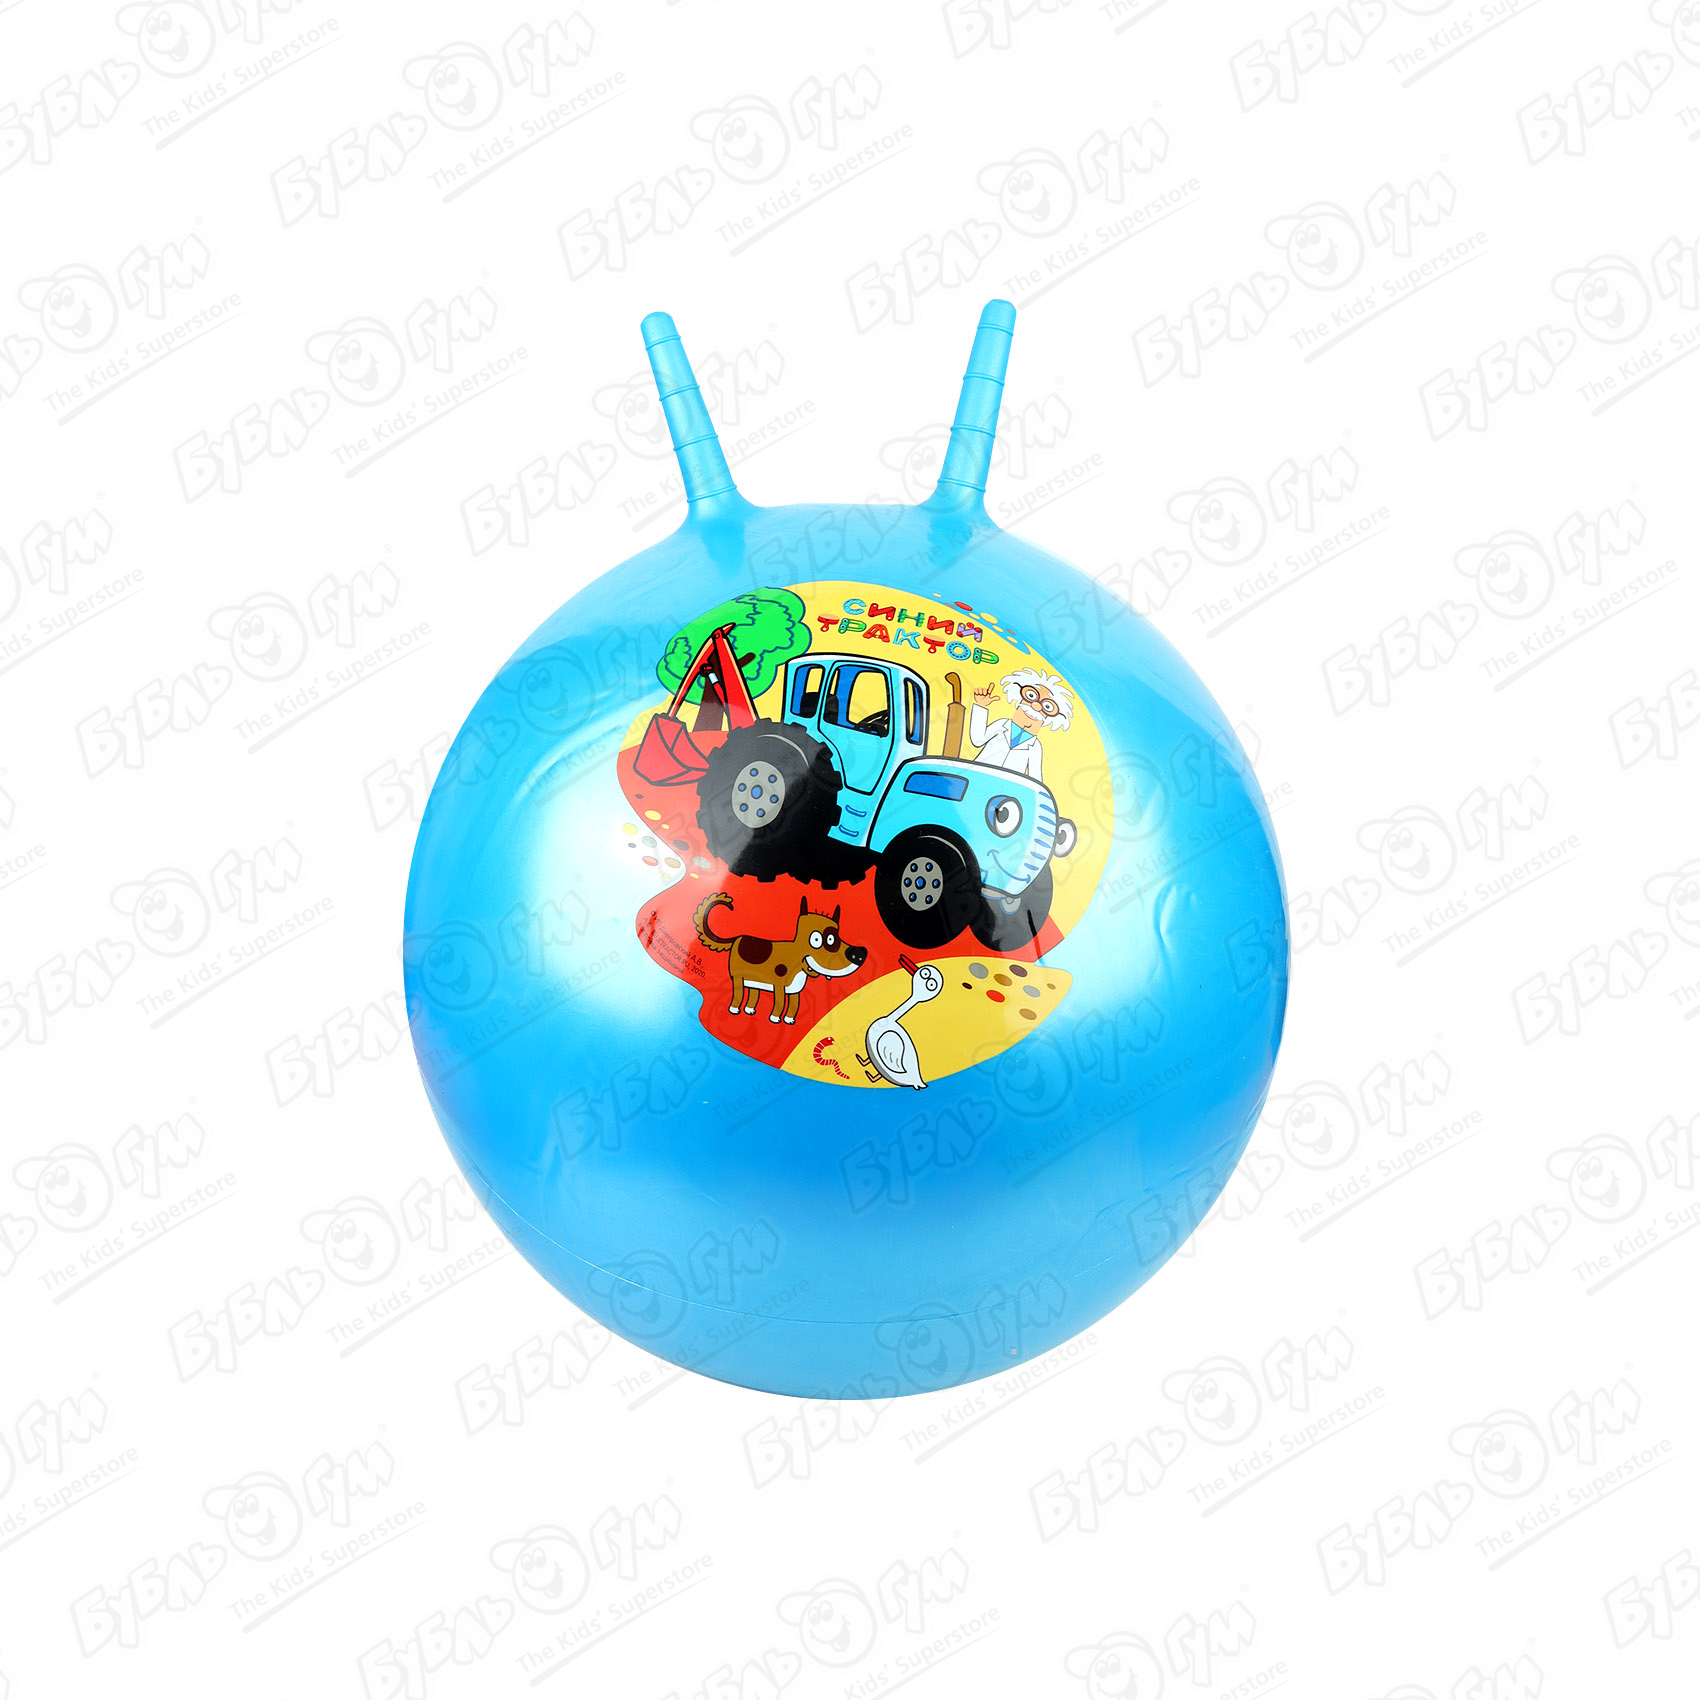 Мяч прыгун с рожками Синий трактор 55см в ассортименте мячи прыгуны skyballs калейдоскоп 45мм 25 шт